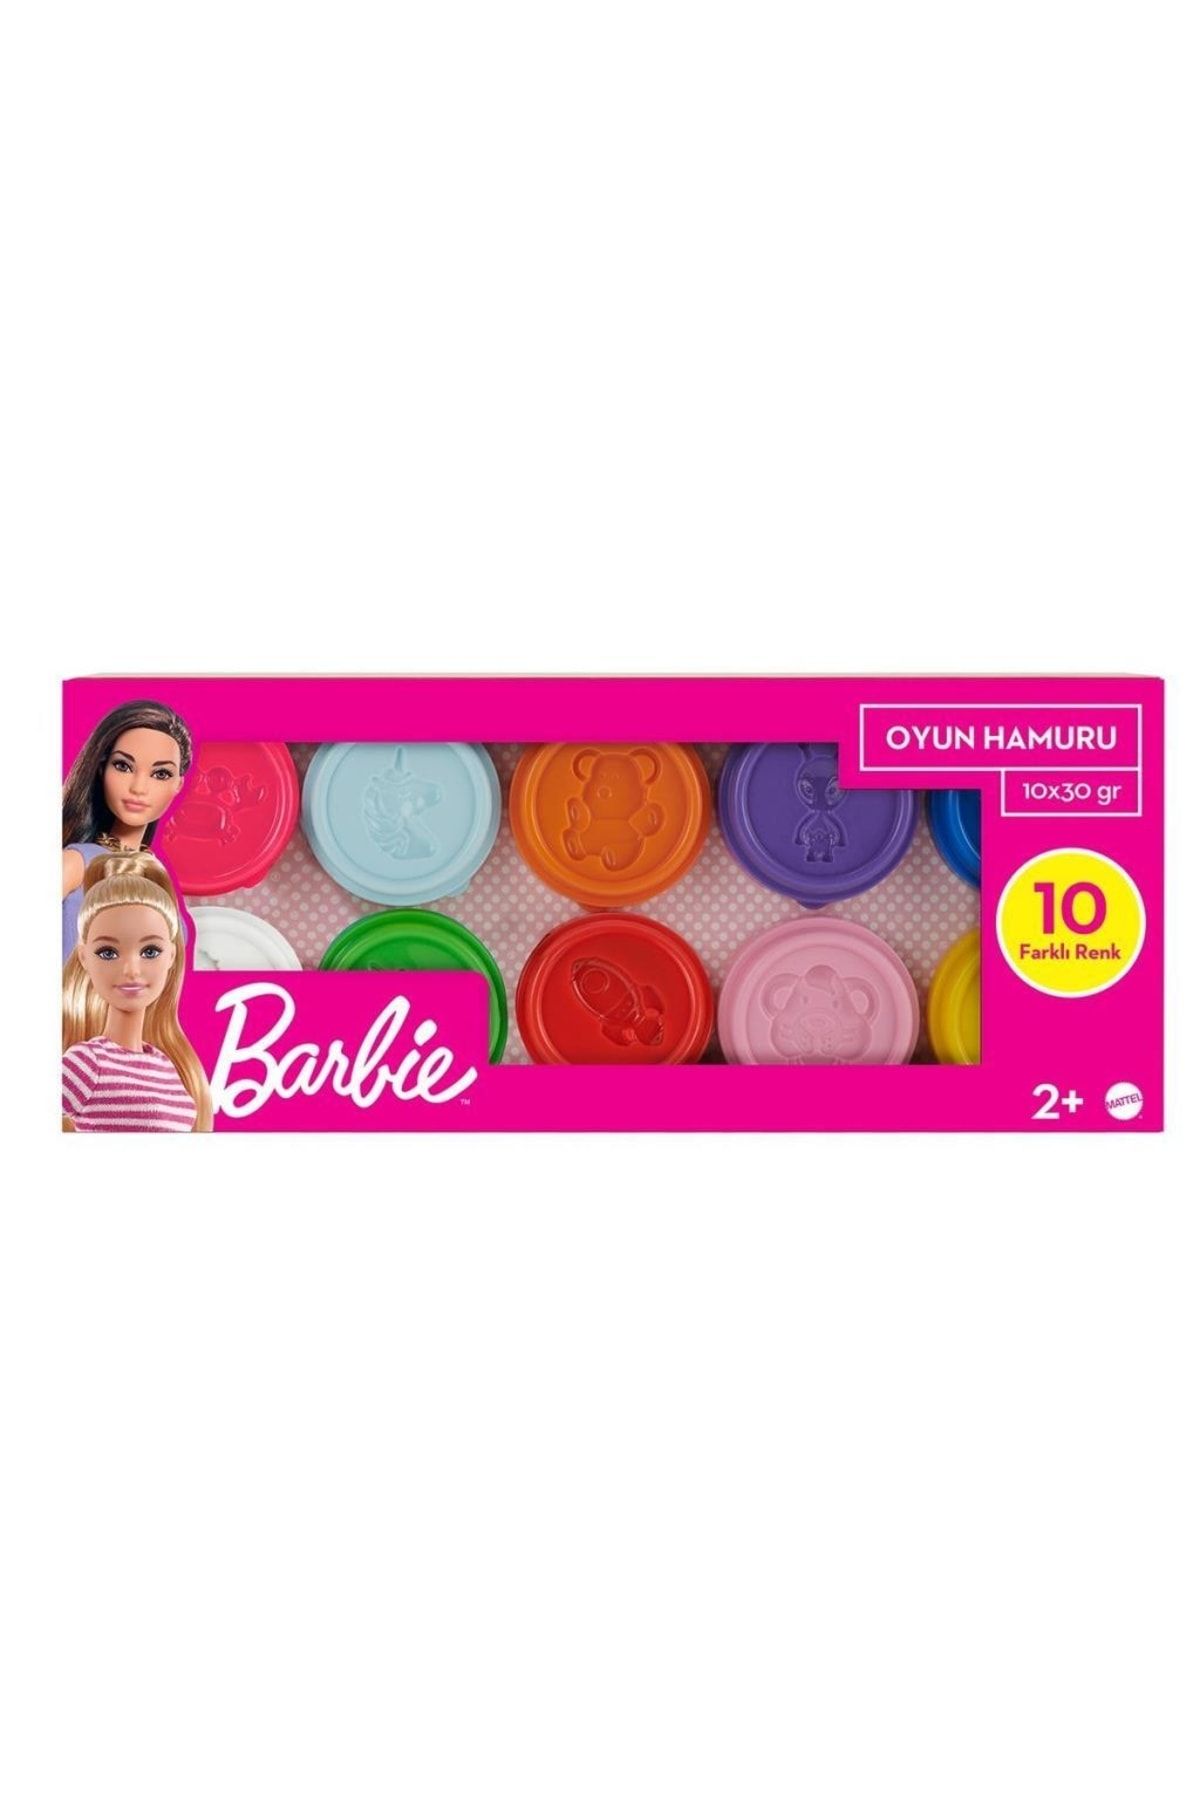 Barbie Oyun Hamurları Hhj37